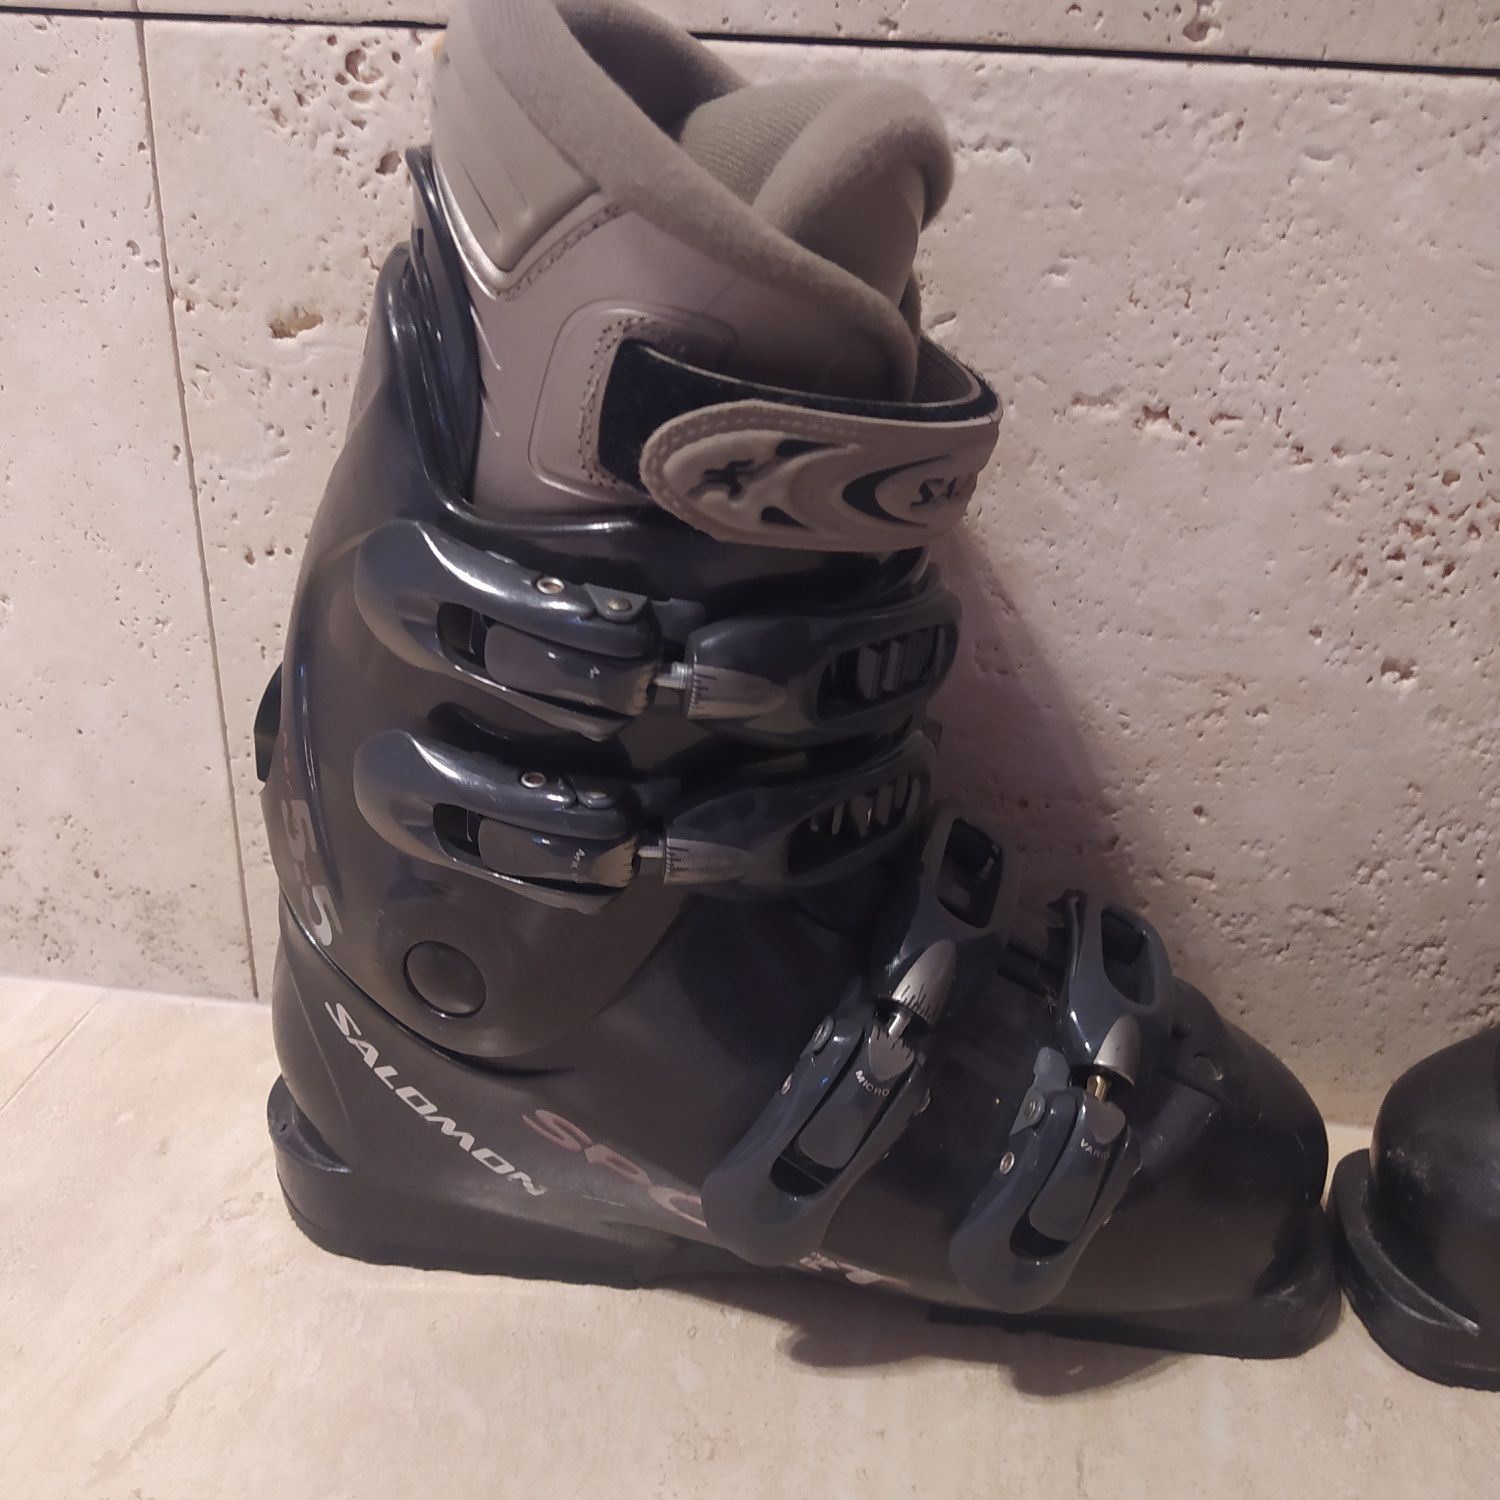 Buty narciarskie marki SALOMON. Długość wkładki 24,5 cm